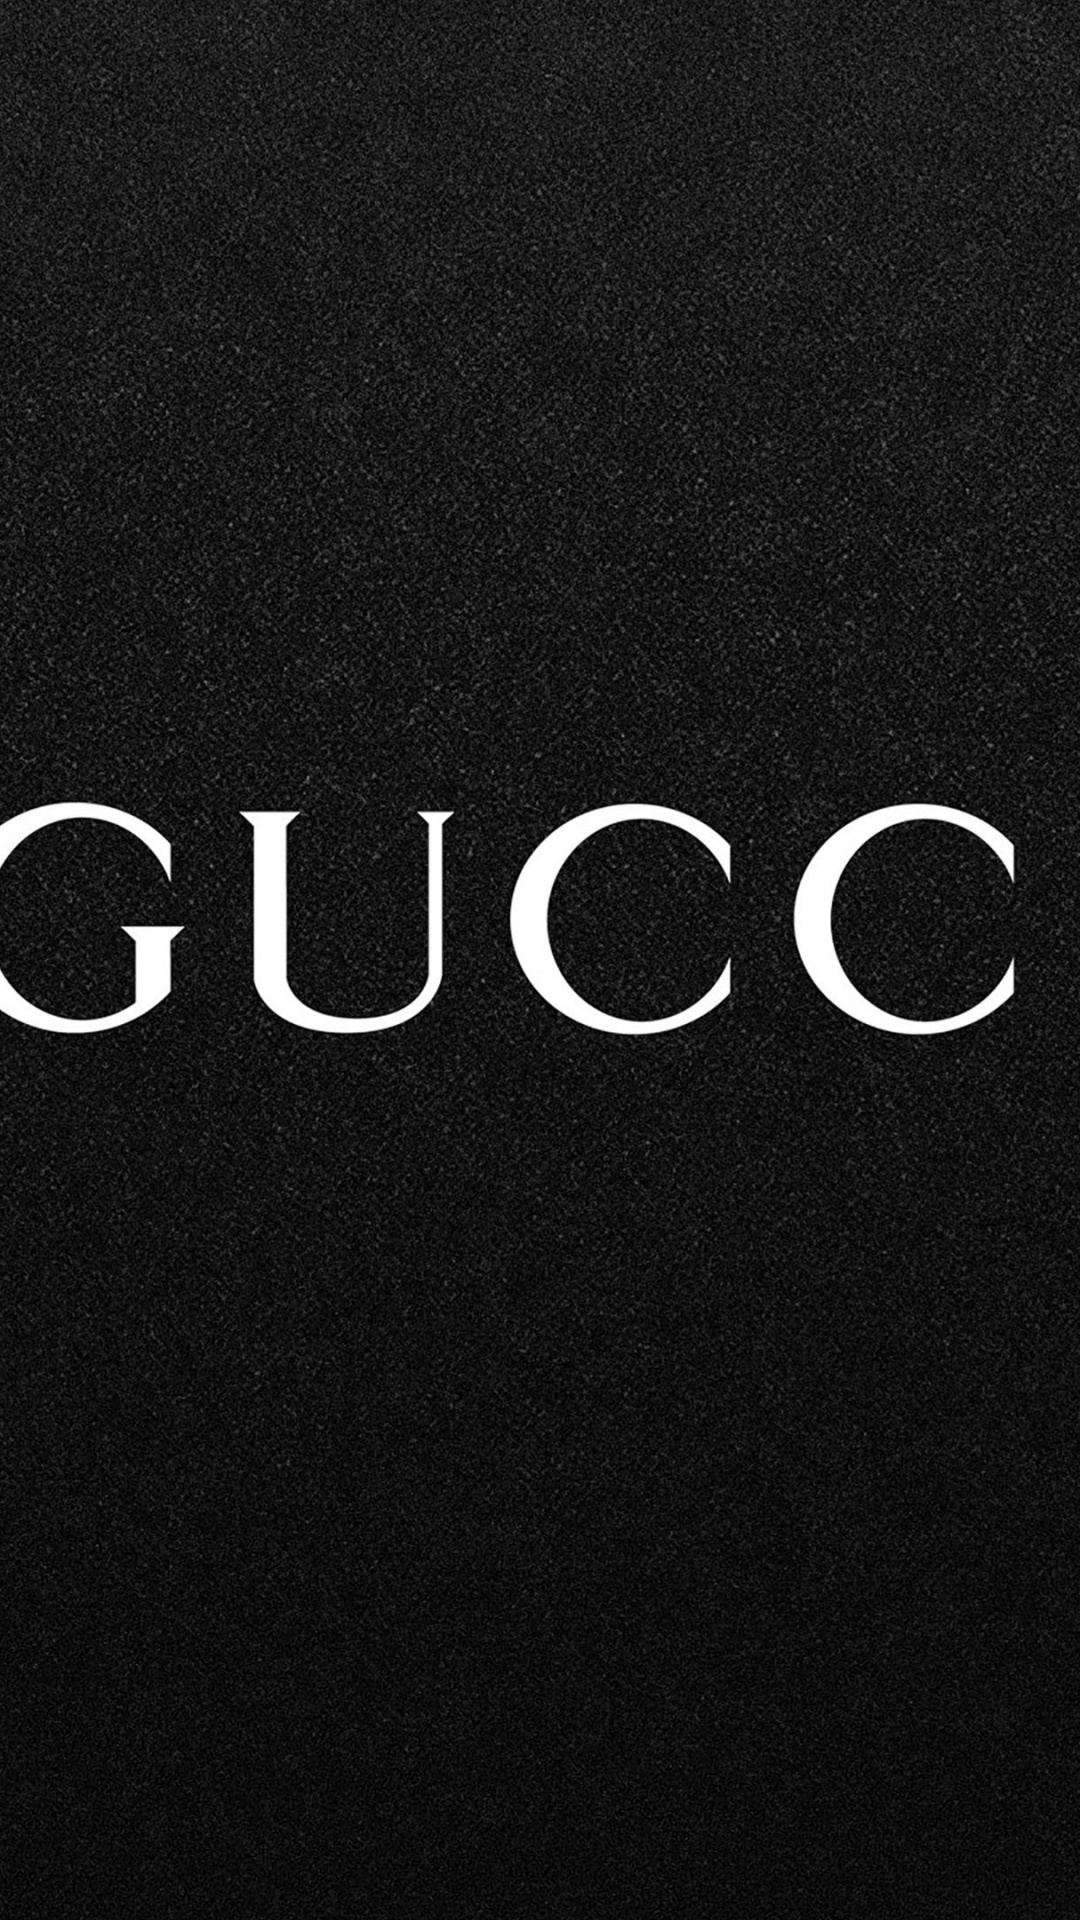 Logotipo, Negro, Gucci, Texto, Marca. Wallpaper in 1080x1920 Resolution